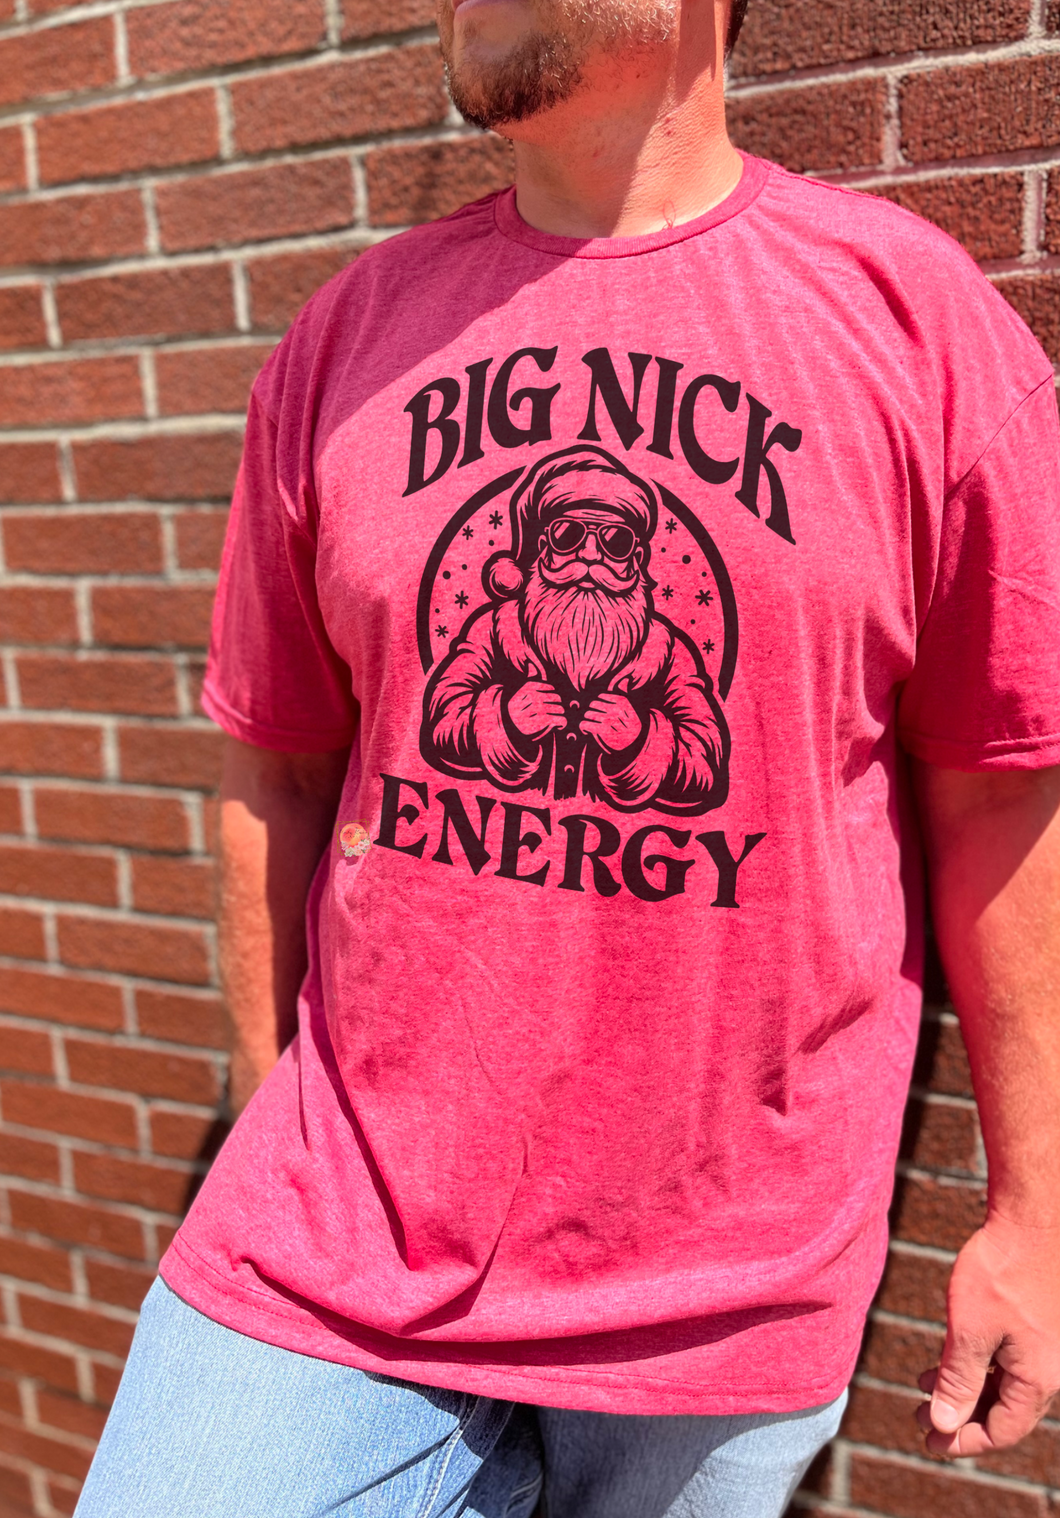 Big nick energy